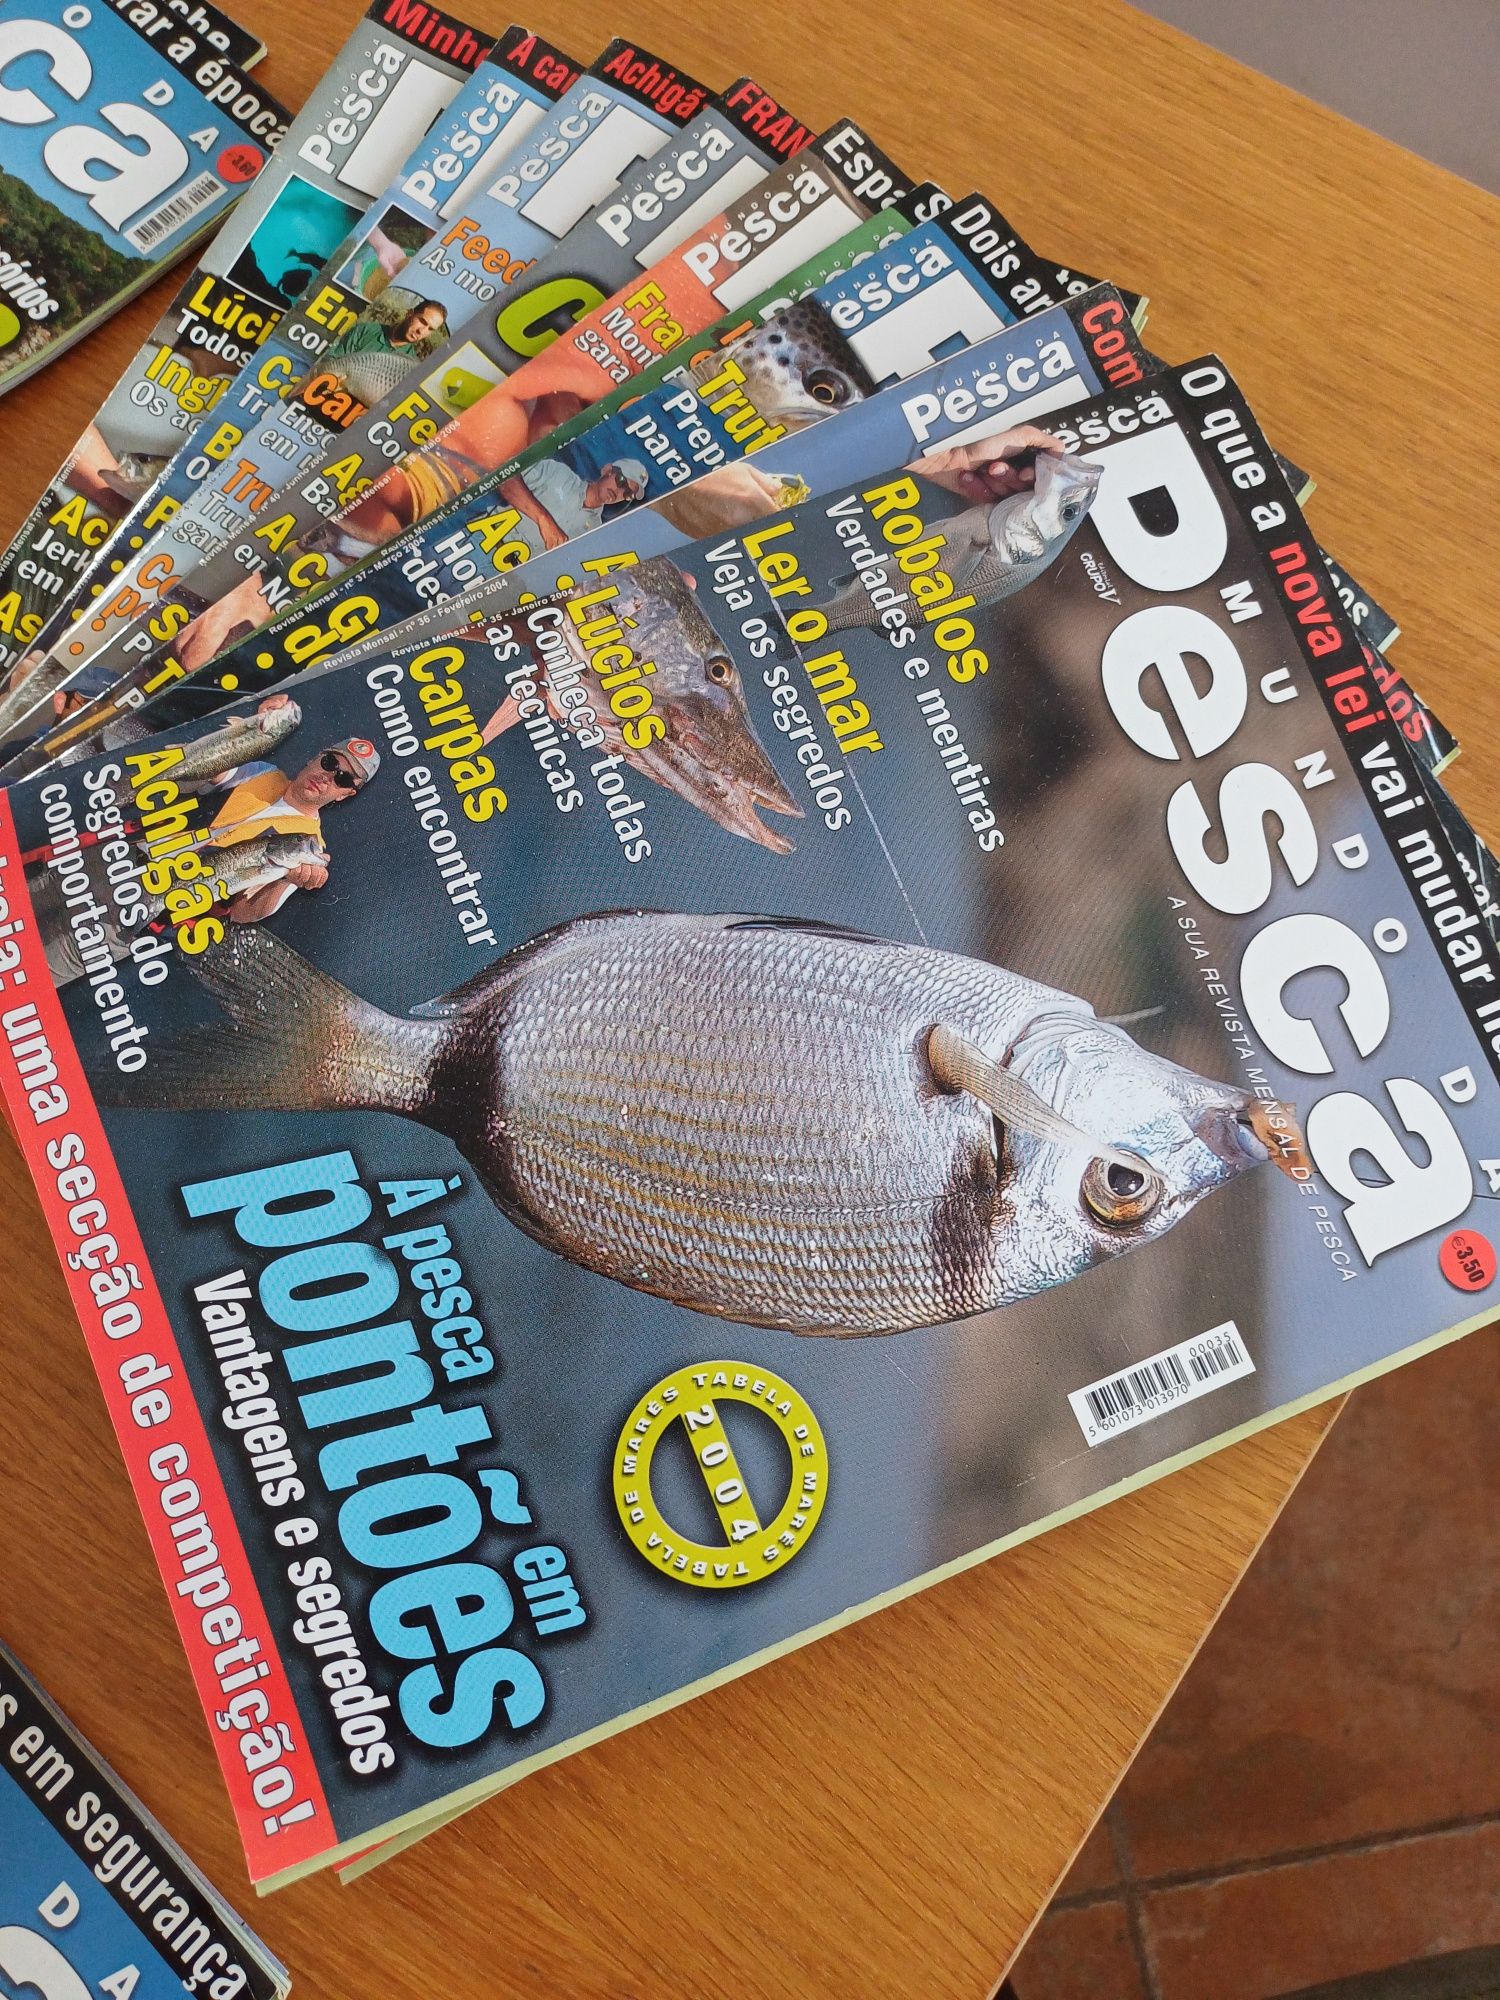 Revistas da publicação "Mundo da Pesca"